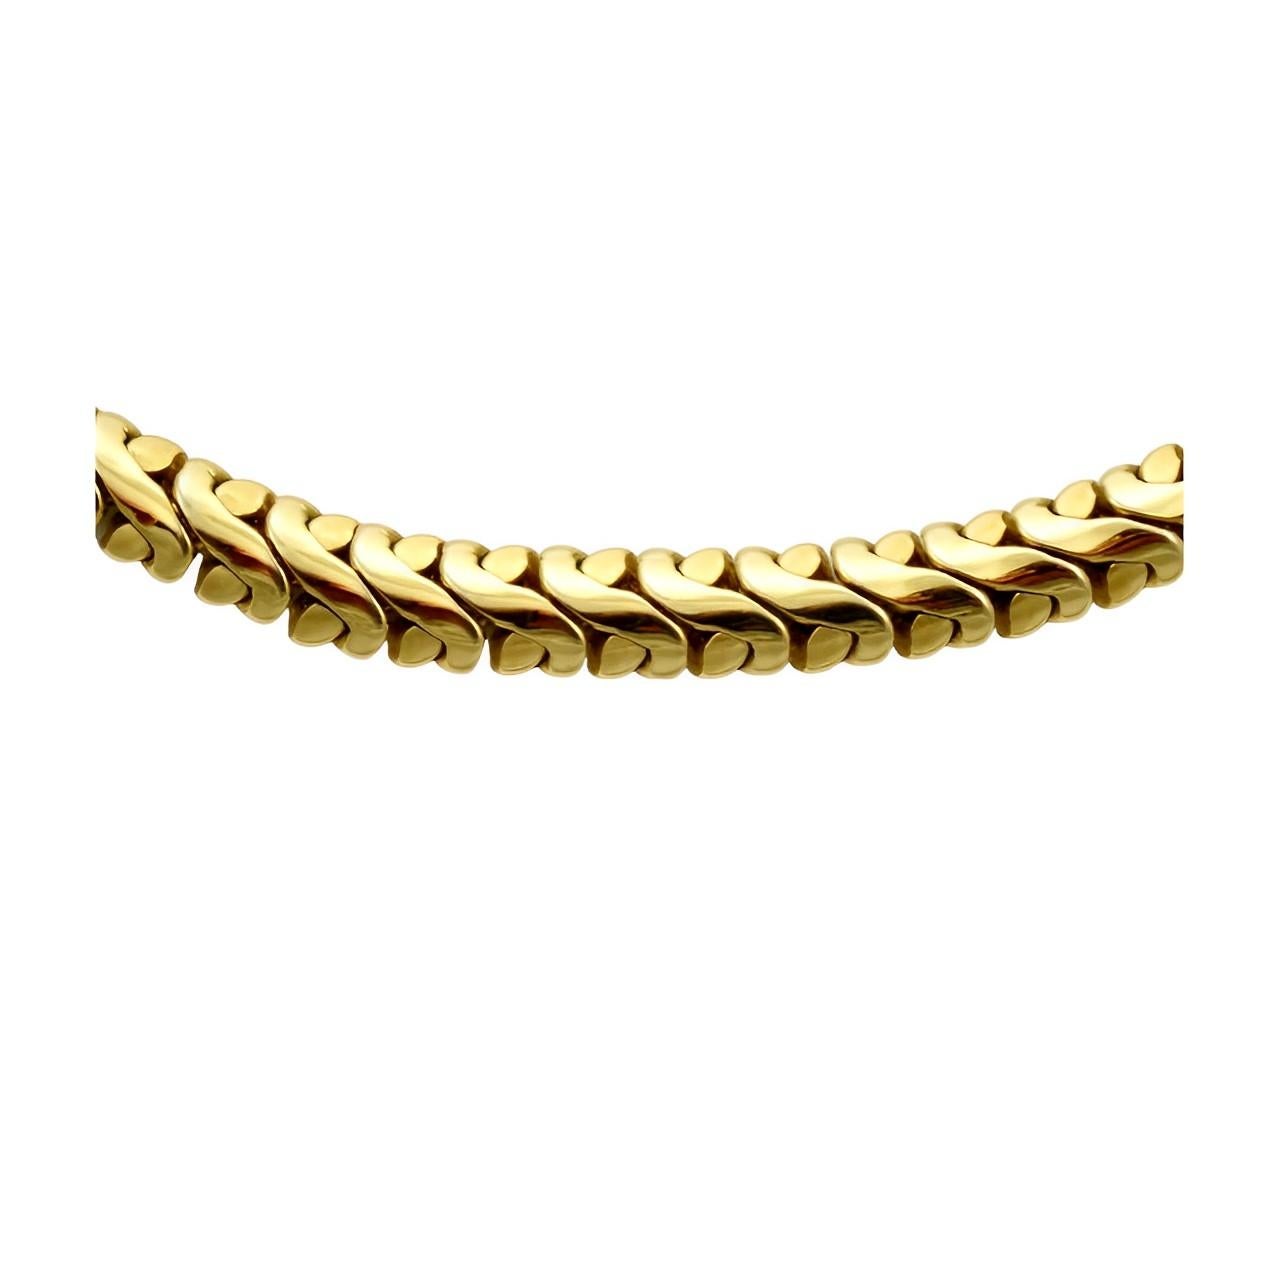 Stilvolle, schwere, vergoldete Kette mit ausgefallenem Gliederdesign. Länge 41,8 cm / 16,45 Zoll bei einer Breite von 7 mm / .27 Zoll.

Dies ist eine Qualität Kette Halskette, circa 1980er Jahre.